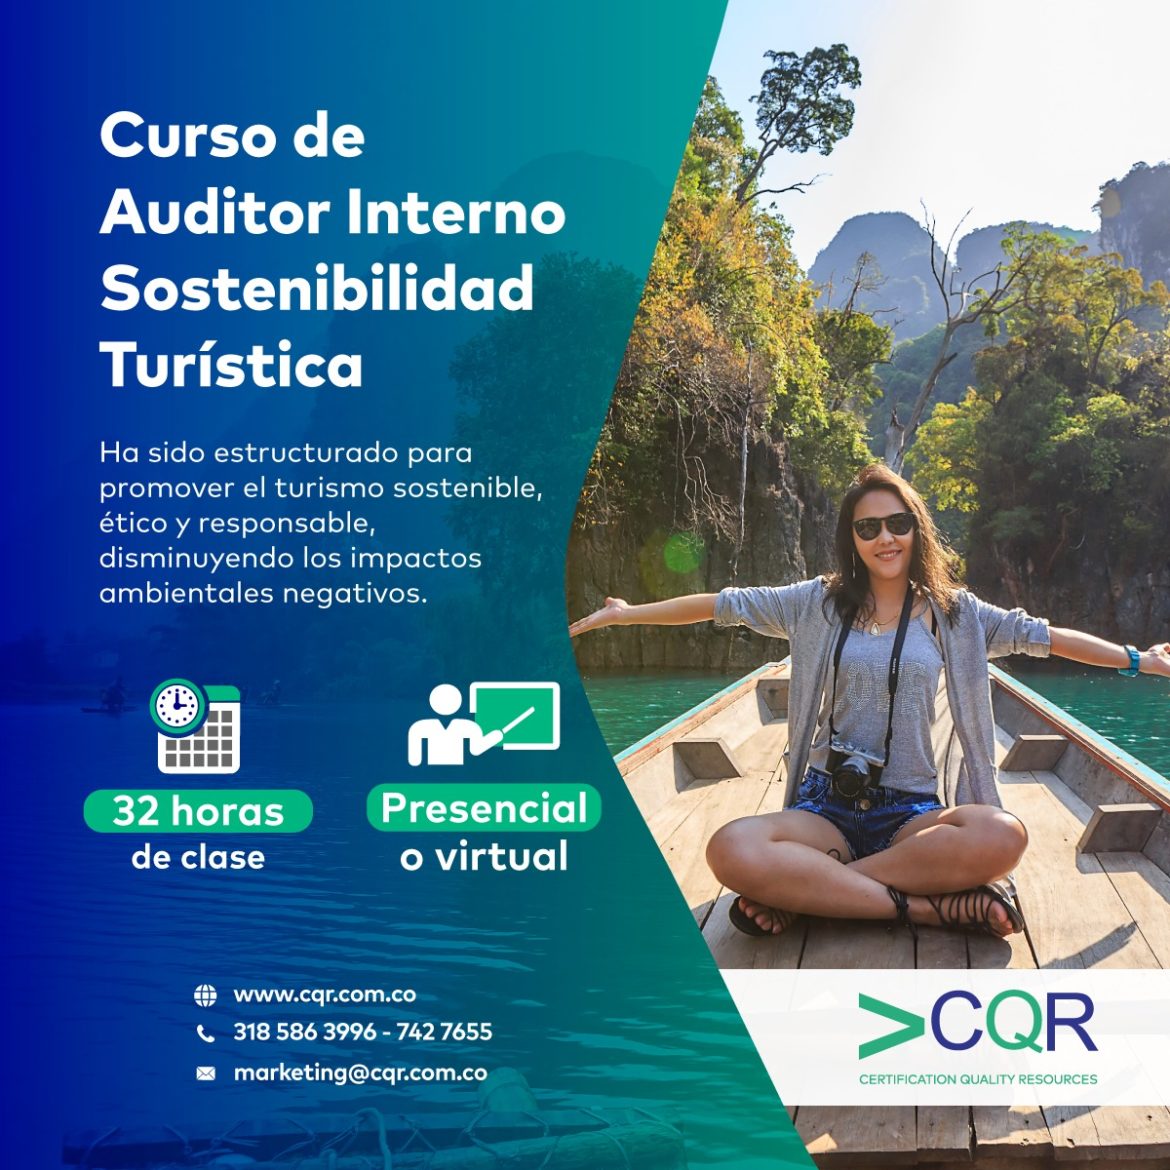 Auditor Interno Sostenibilidad Turística CQR Cotecna